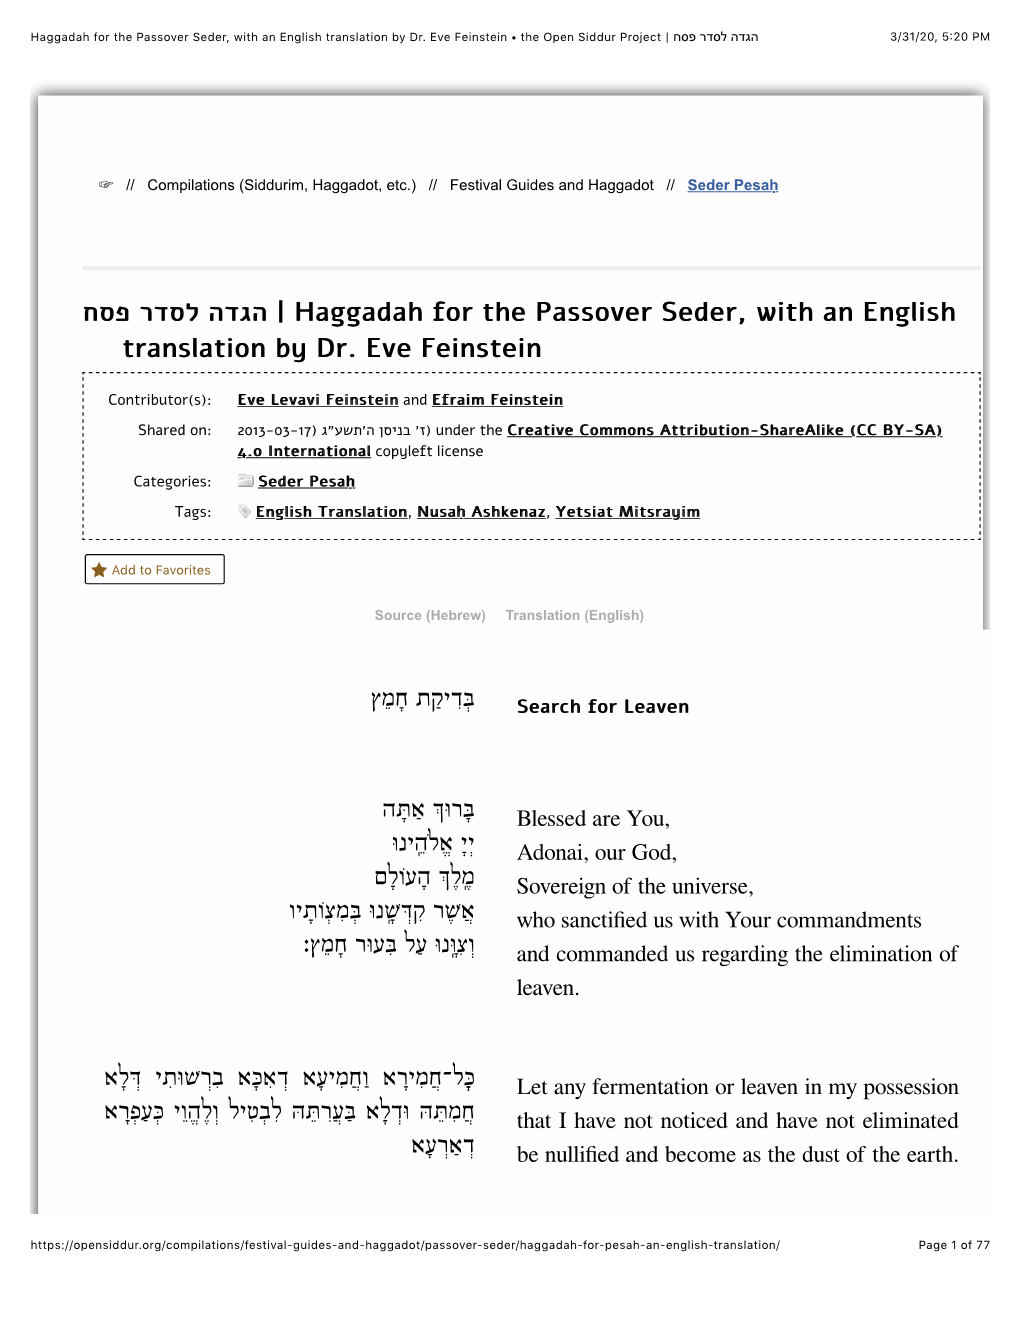 הגדה לסדר פסח | Haggadah for the Passover Seder, with an English Translation by Dr